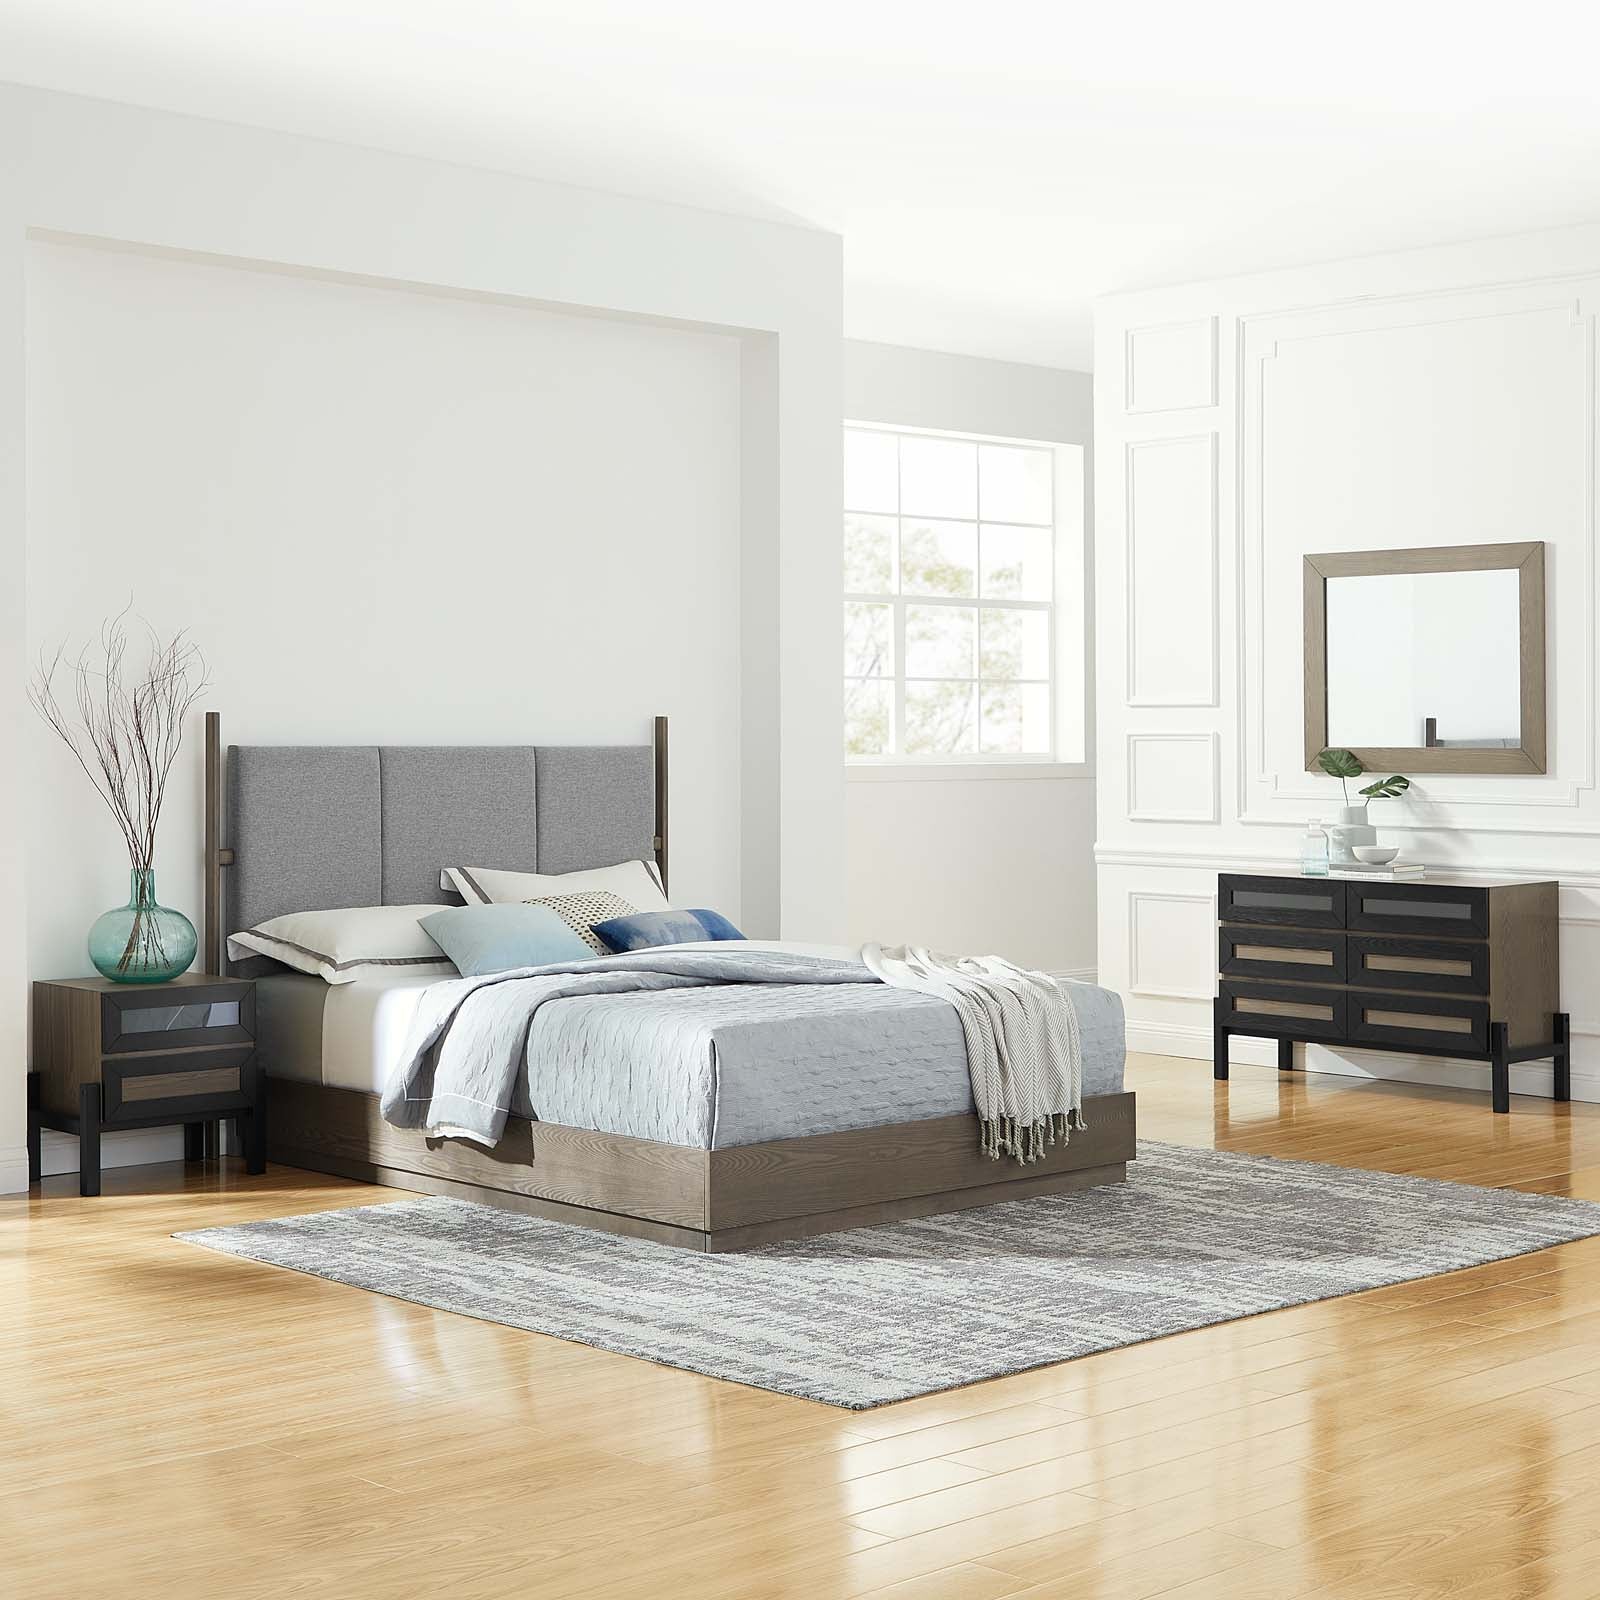 Merritt 4 Piece Upholstered Bedroom Set - East Shore Modern Home Furnishings